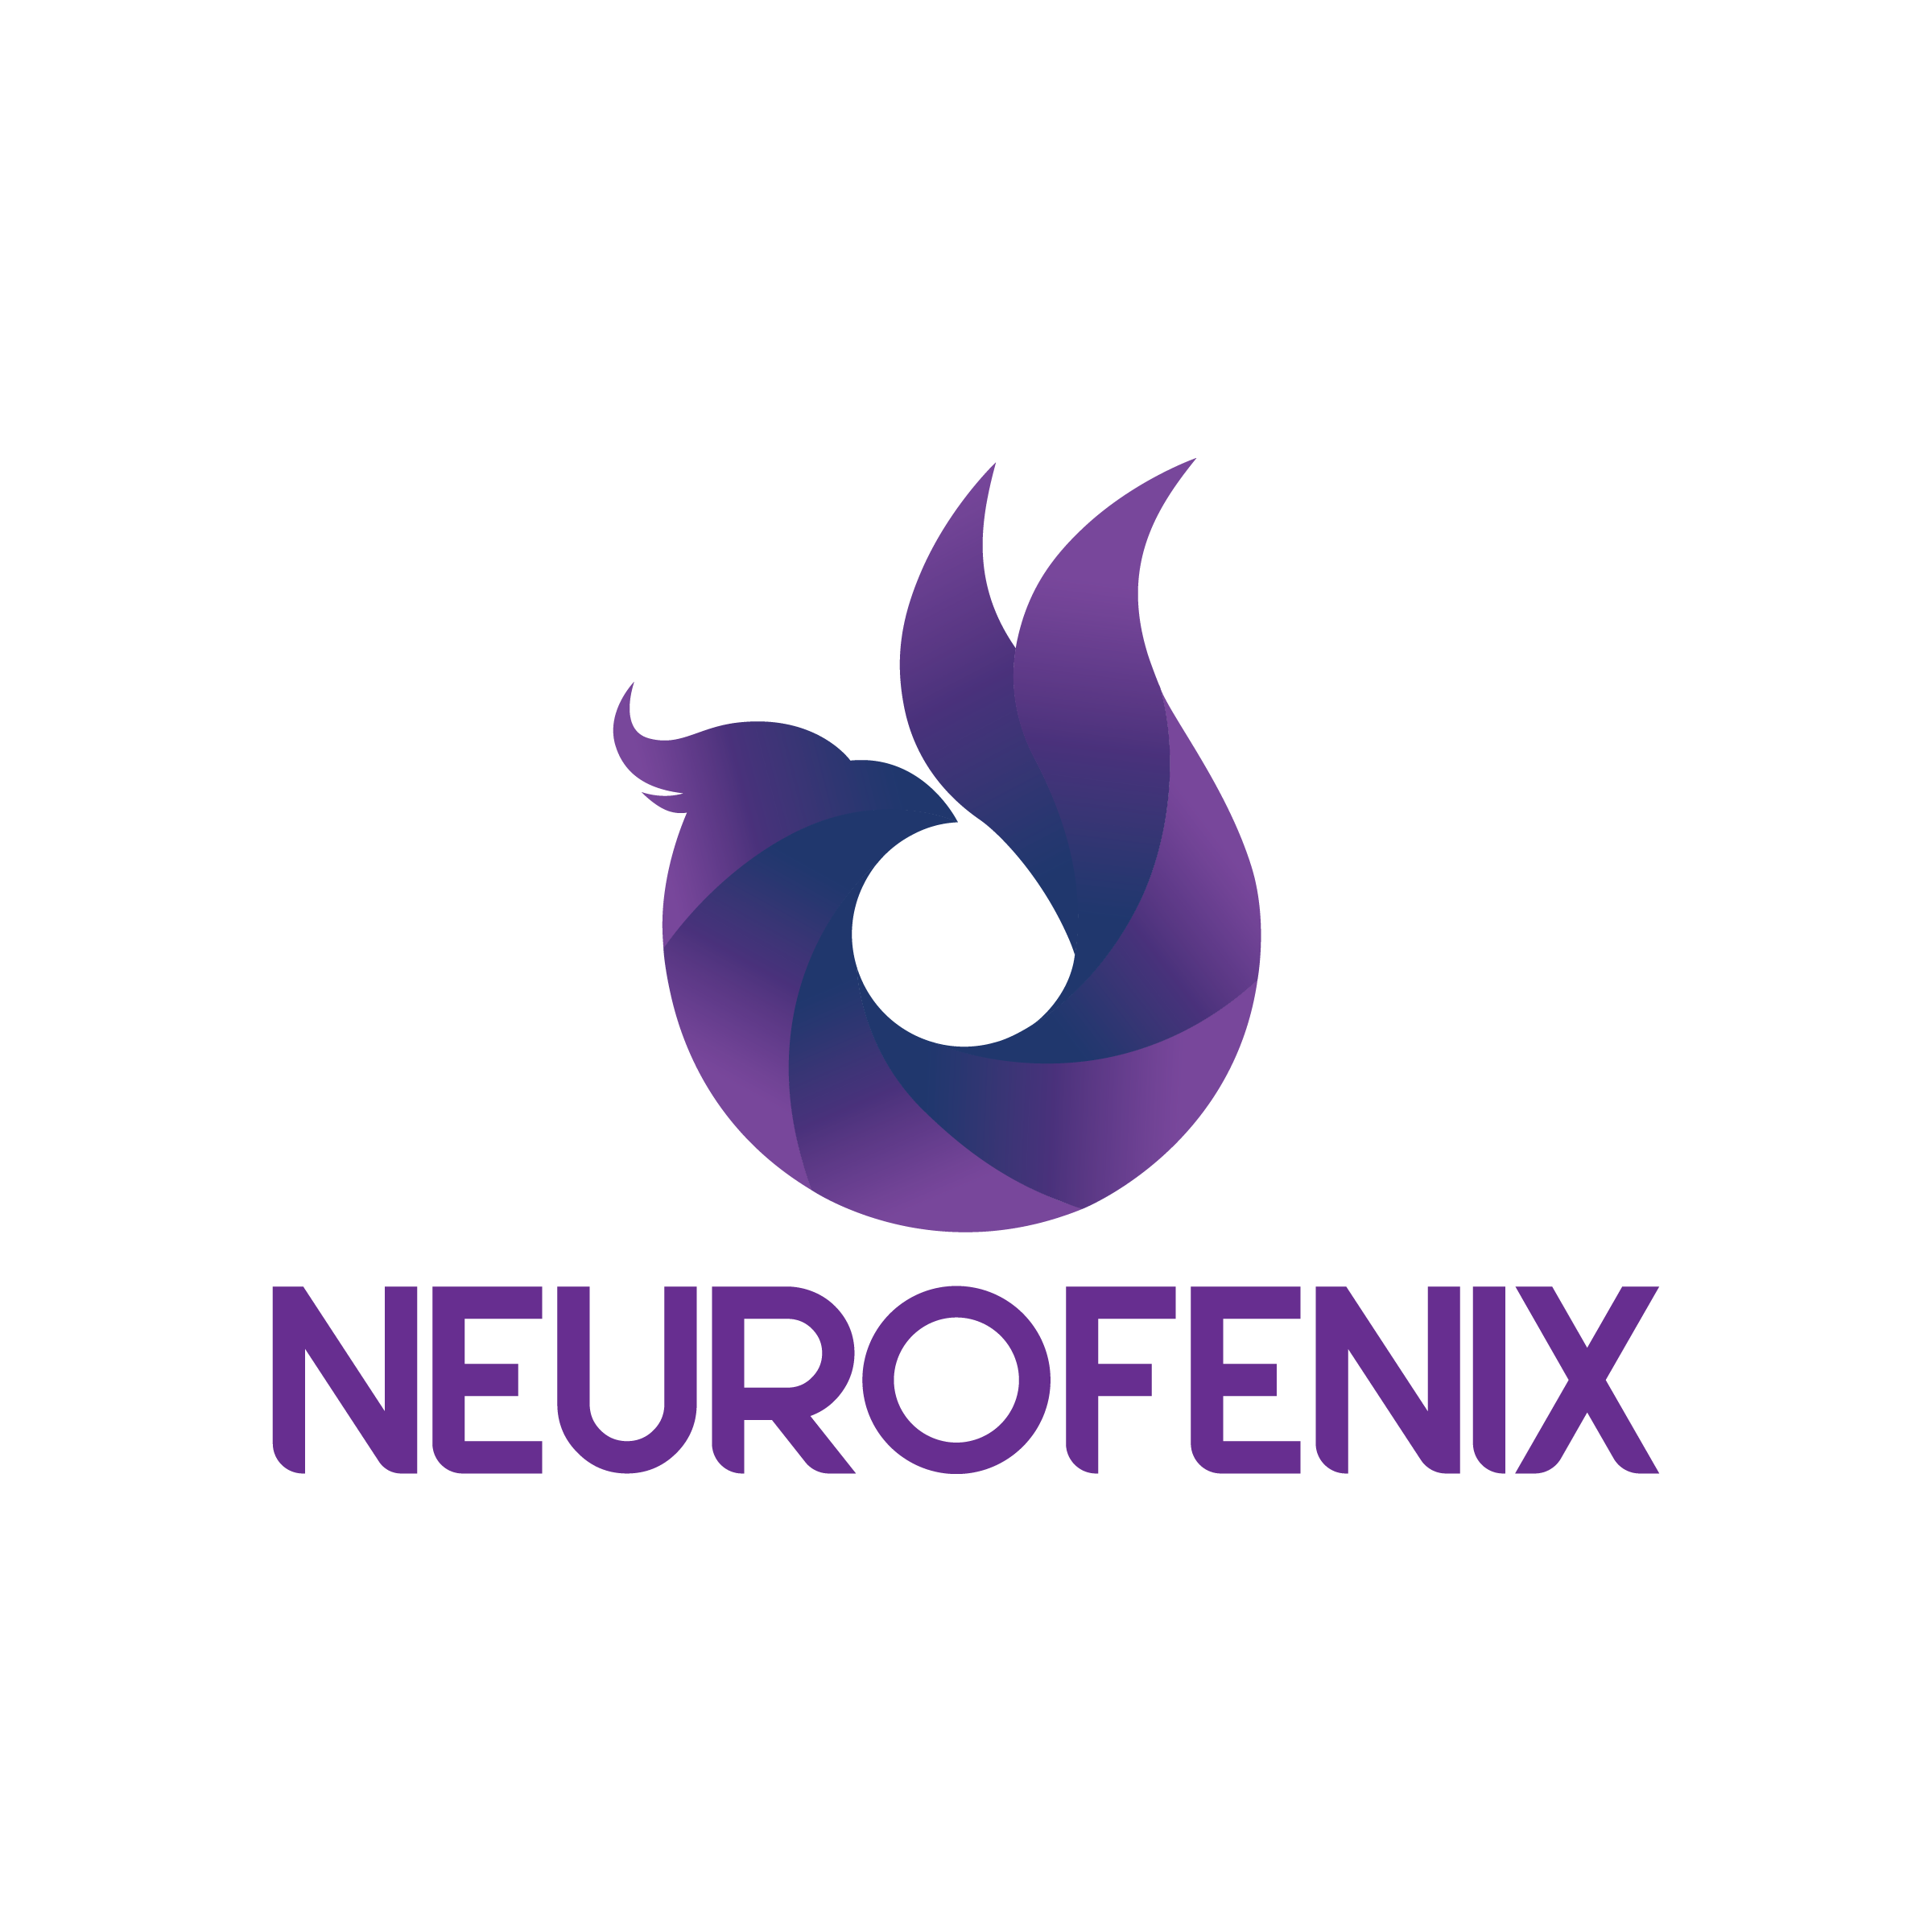 Neurofenix-logo.png